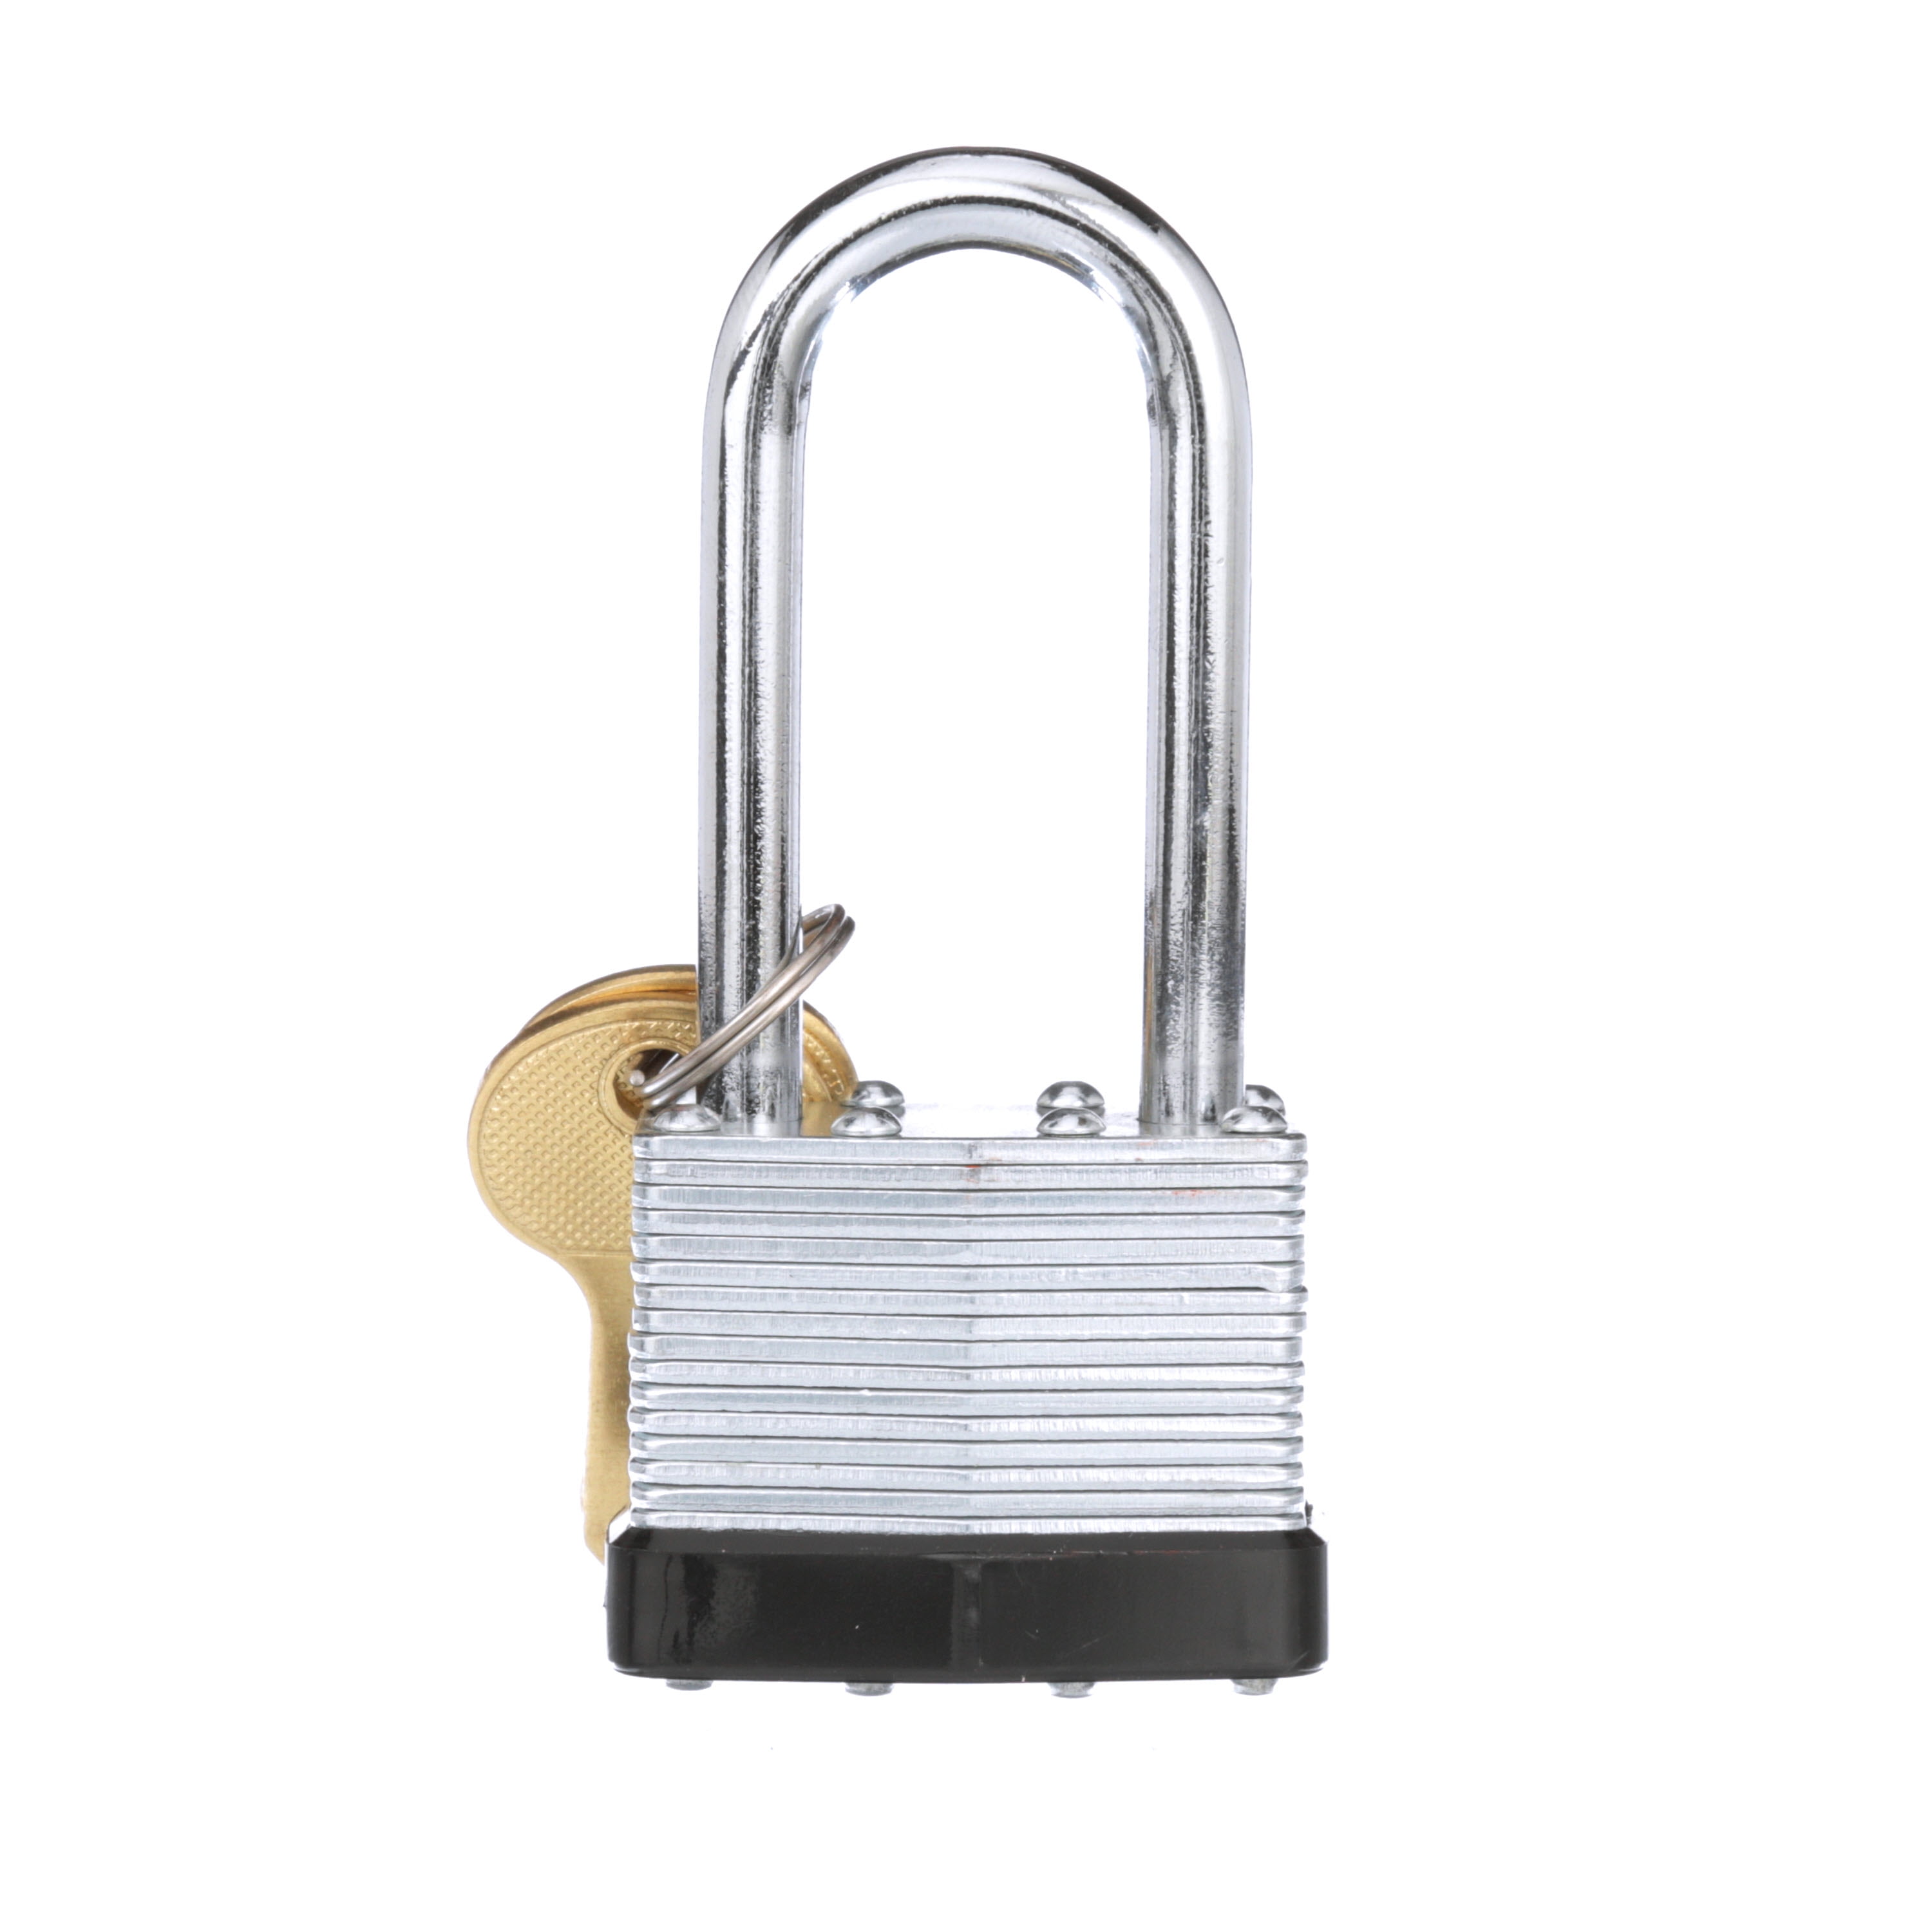 Padlock, Magnum Solid Steel Lock, 40mm Wide Silver Tone Metal Long Shackle  Security Padlock w 4 Keys